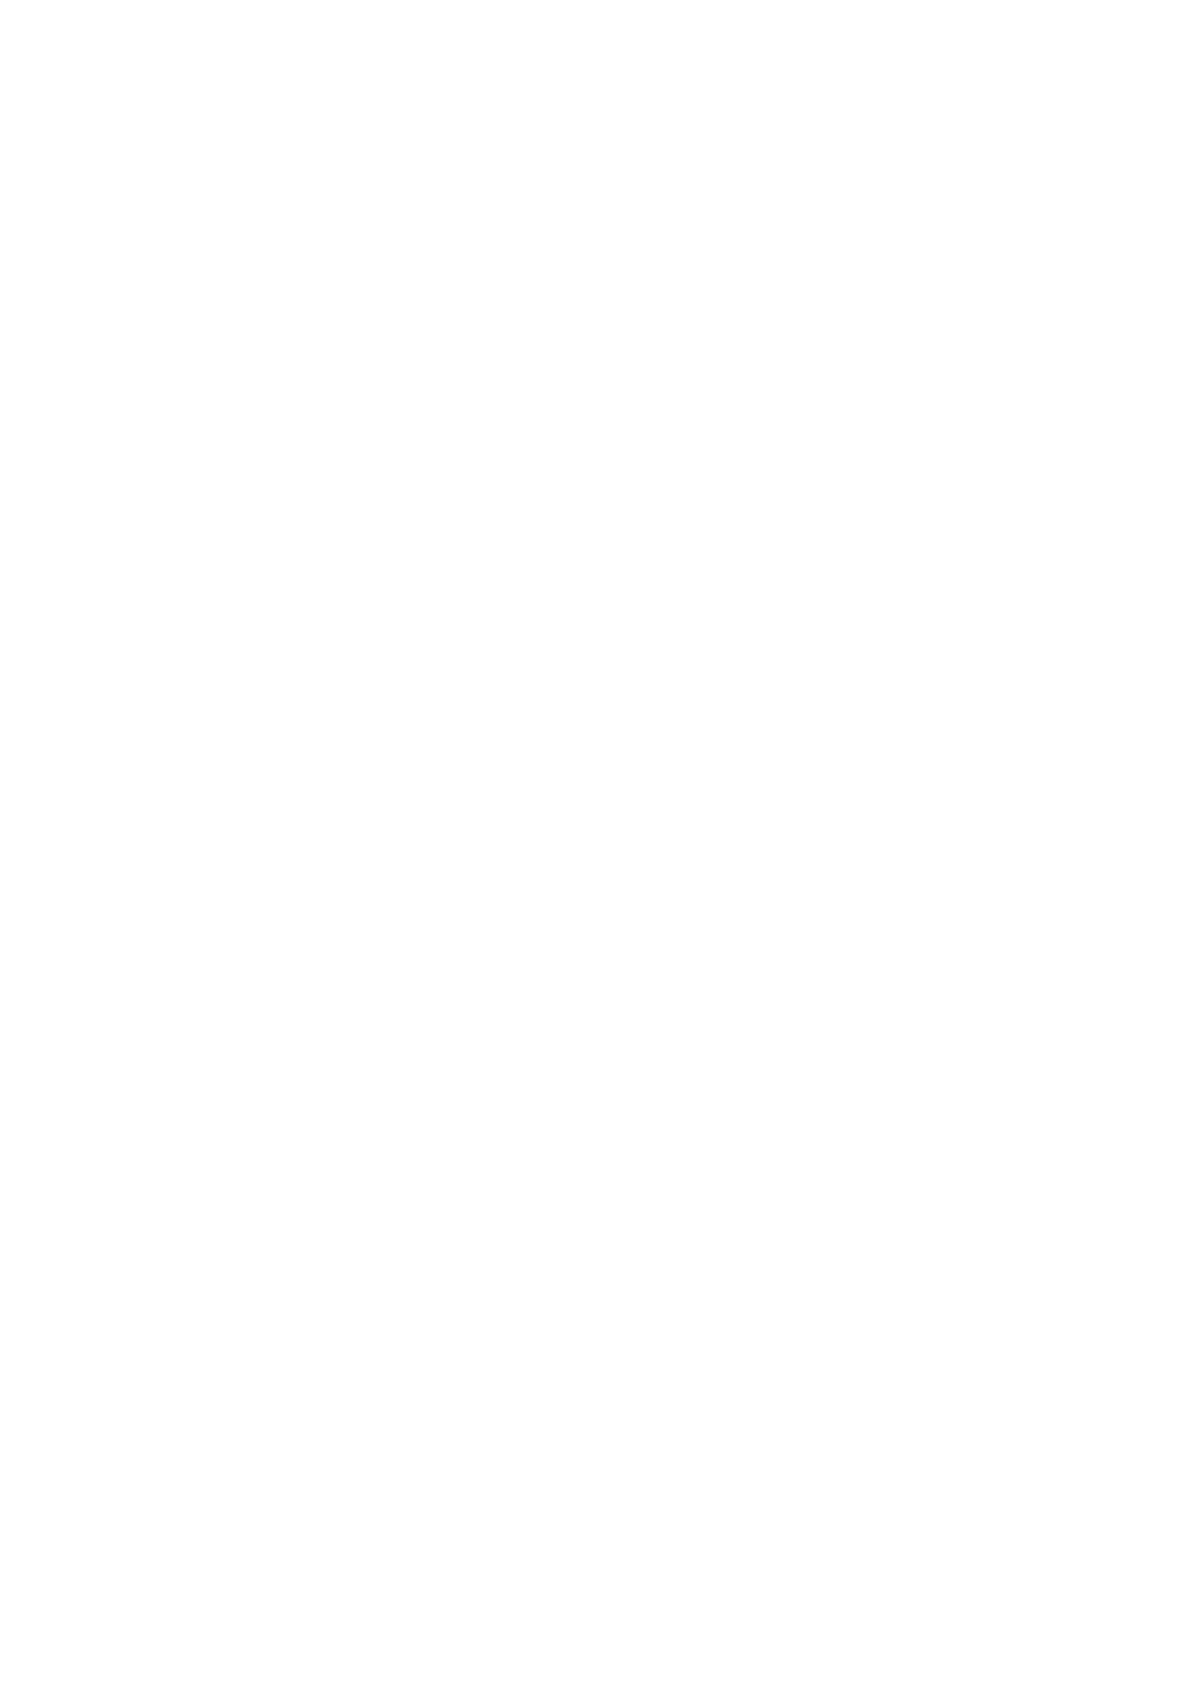 white polka dots